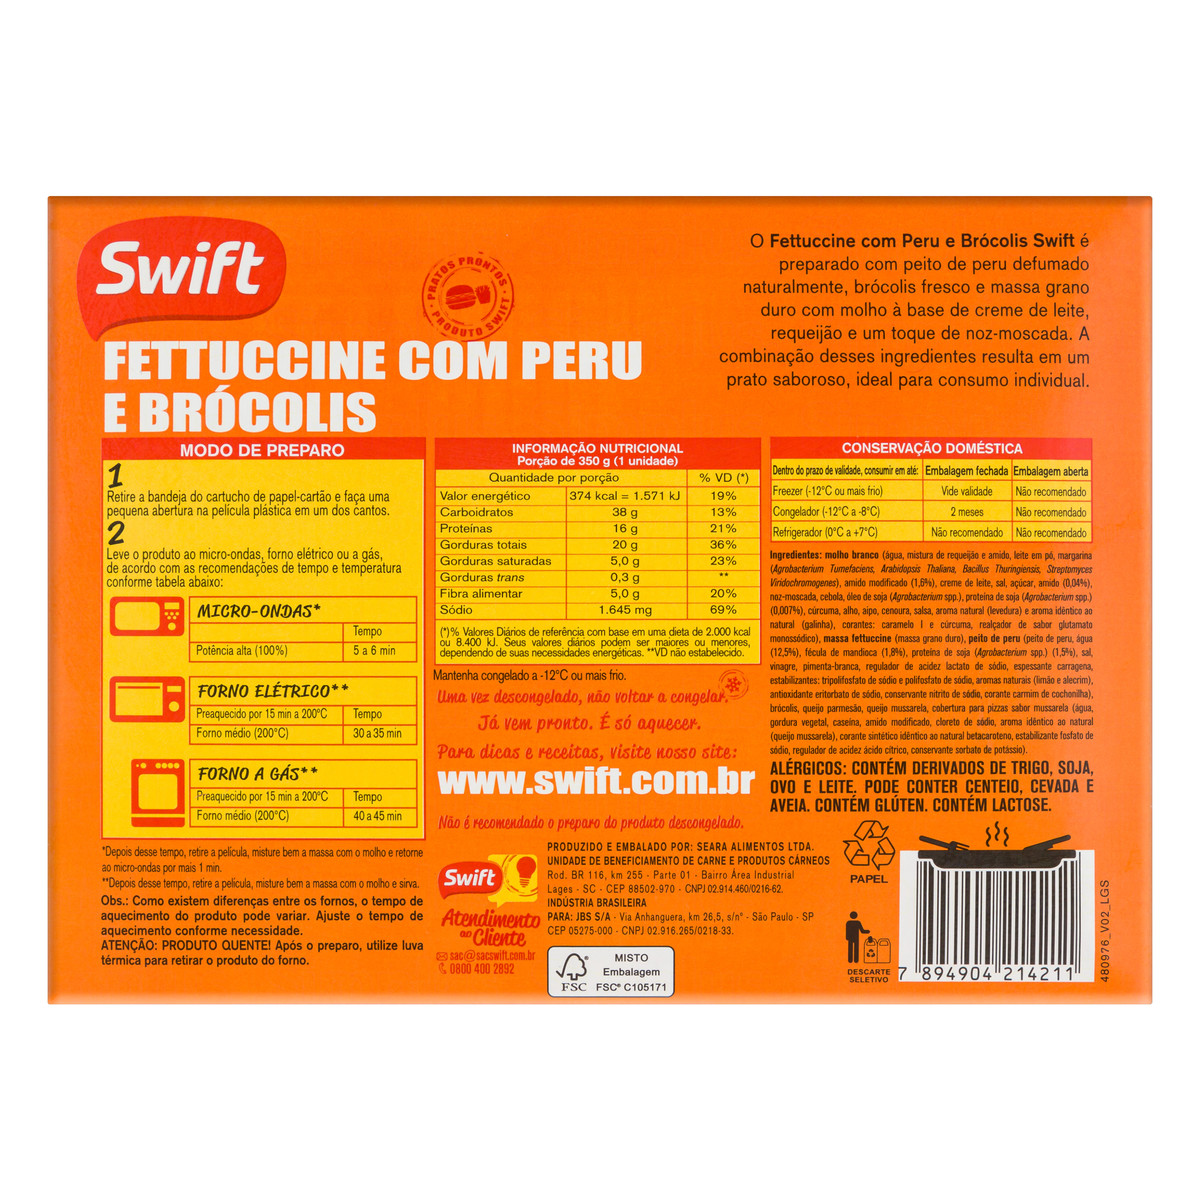 Carne Moída Tubete Swift 500g - Swift